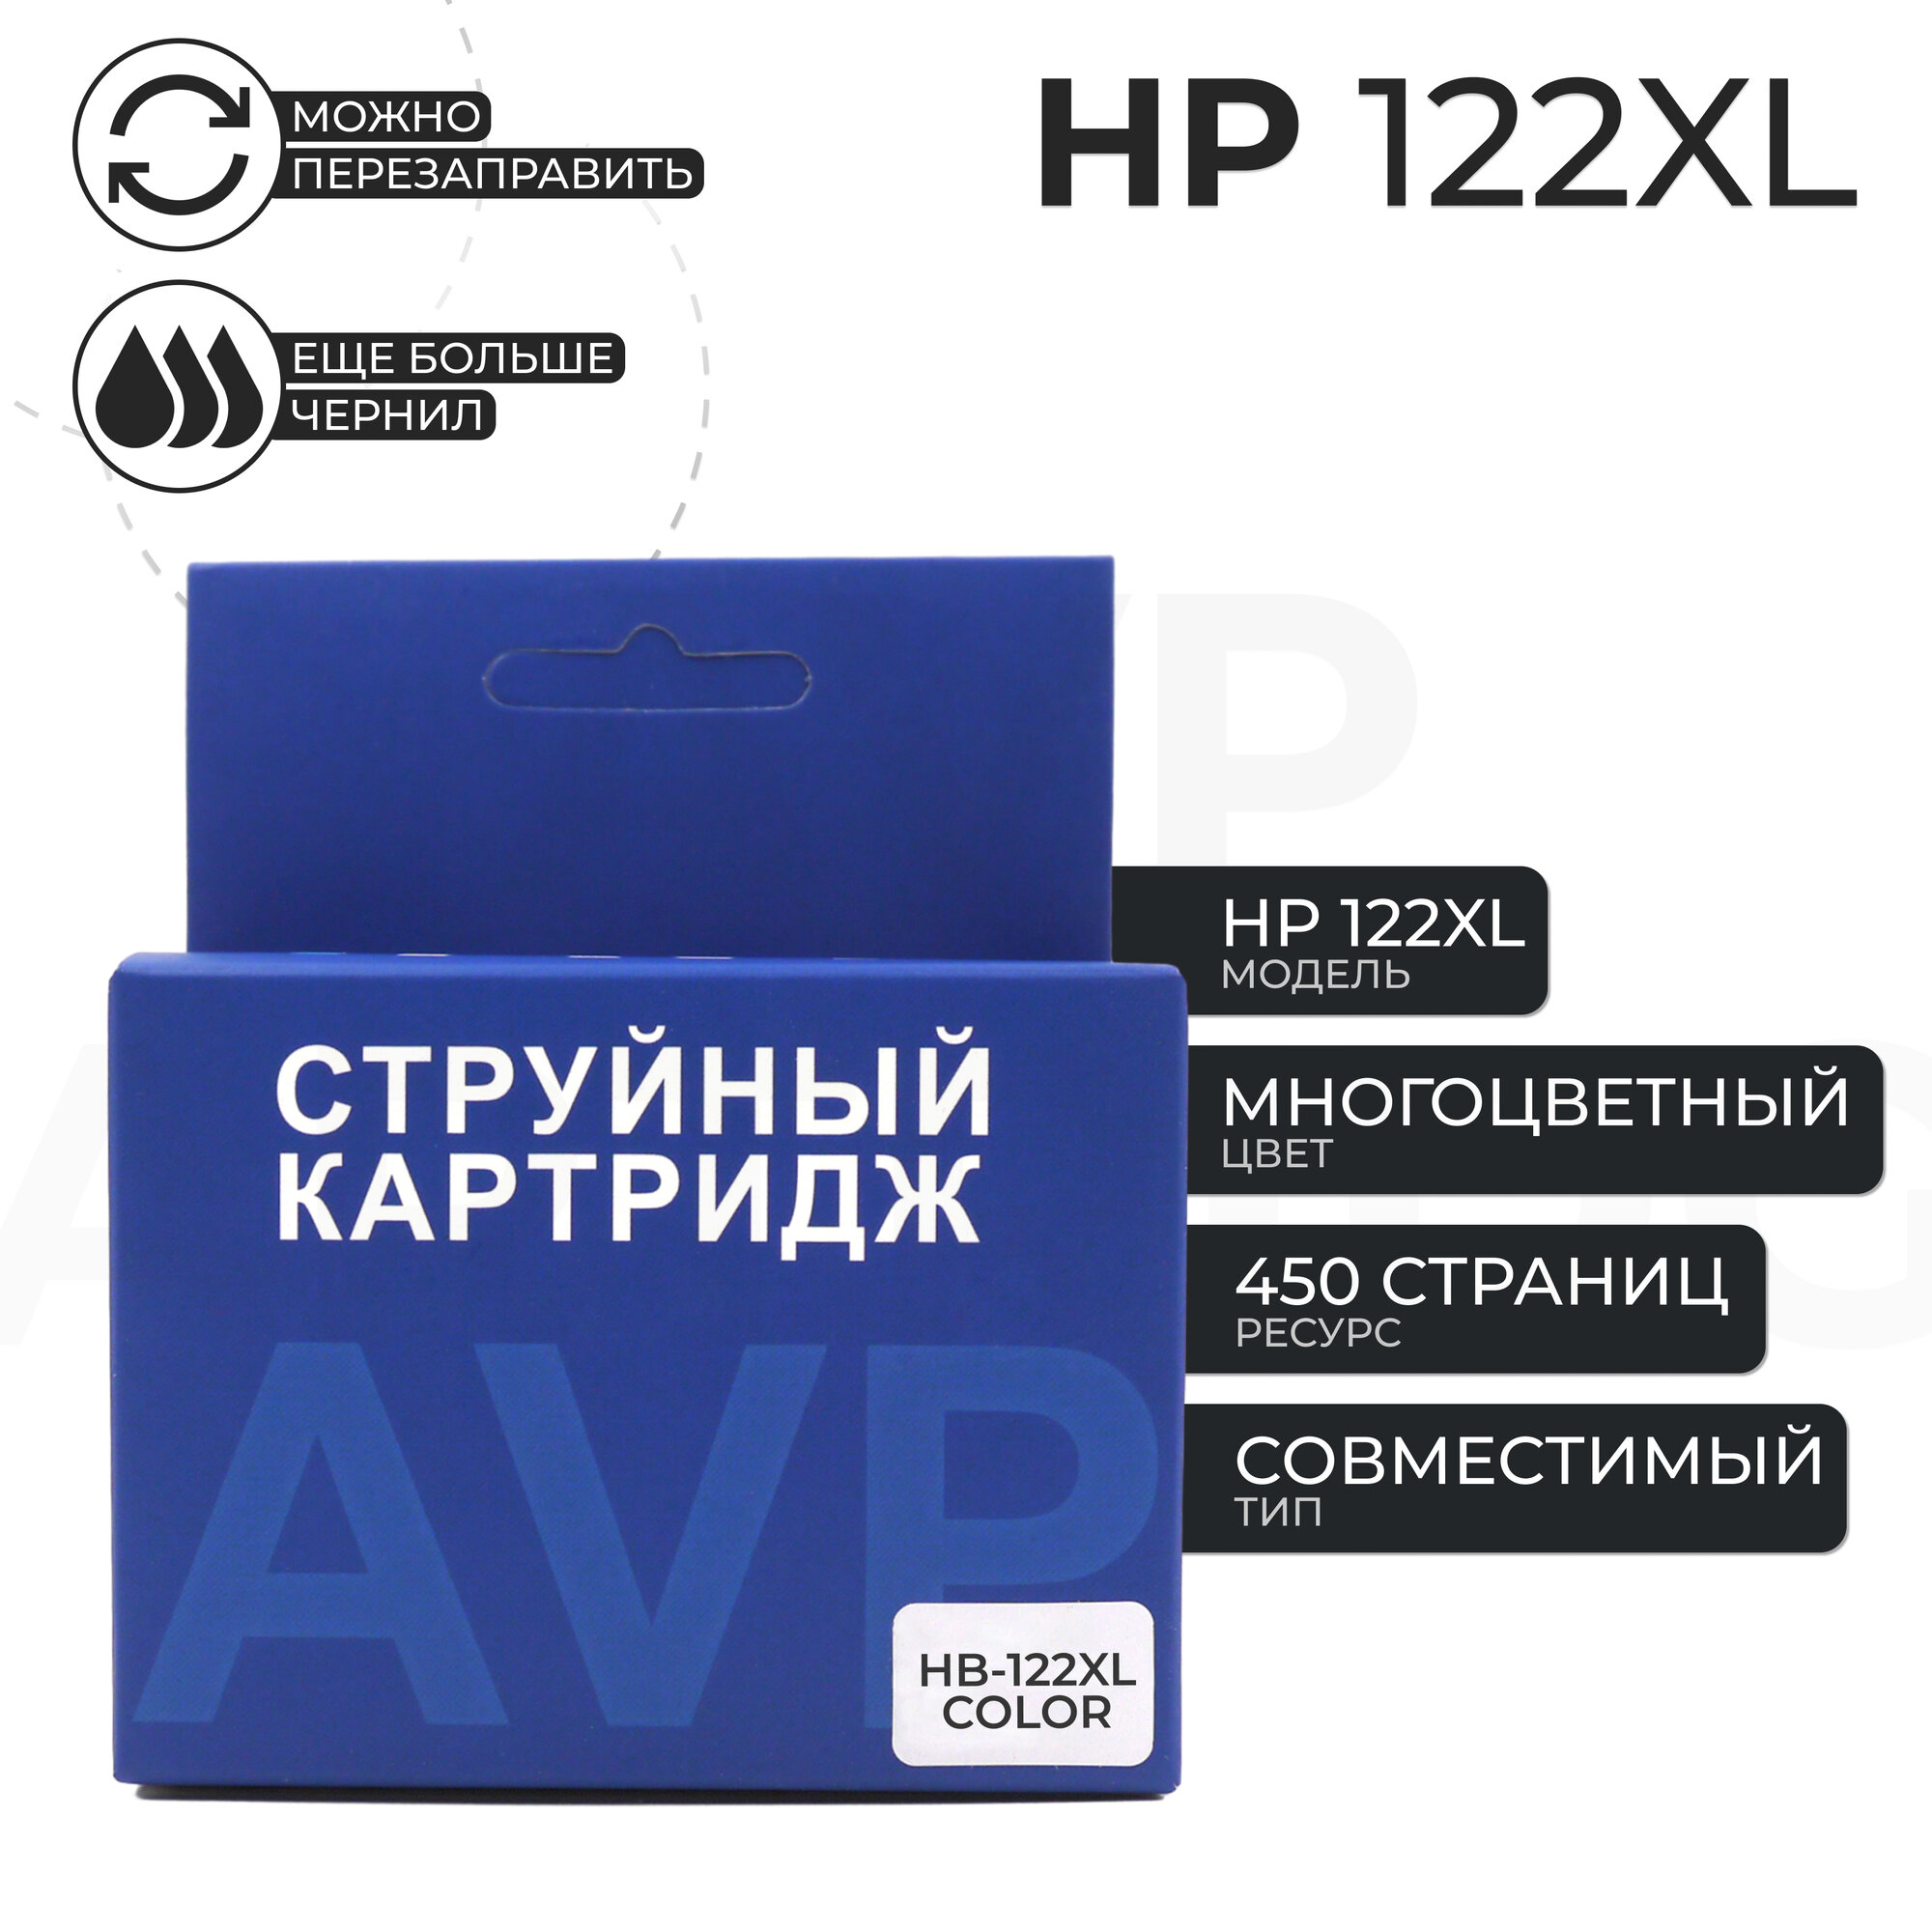 Картридж HP 122 XL (122XL), цветной